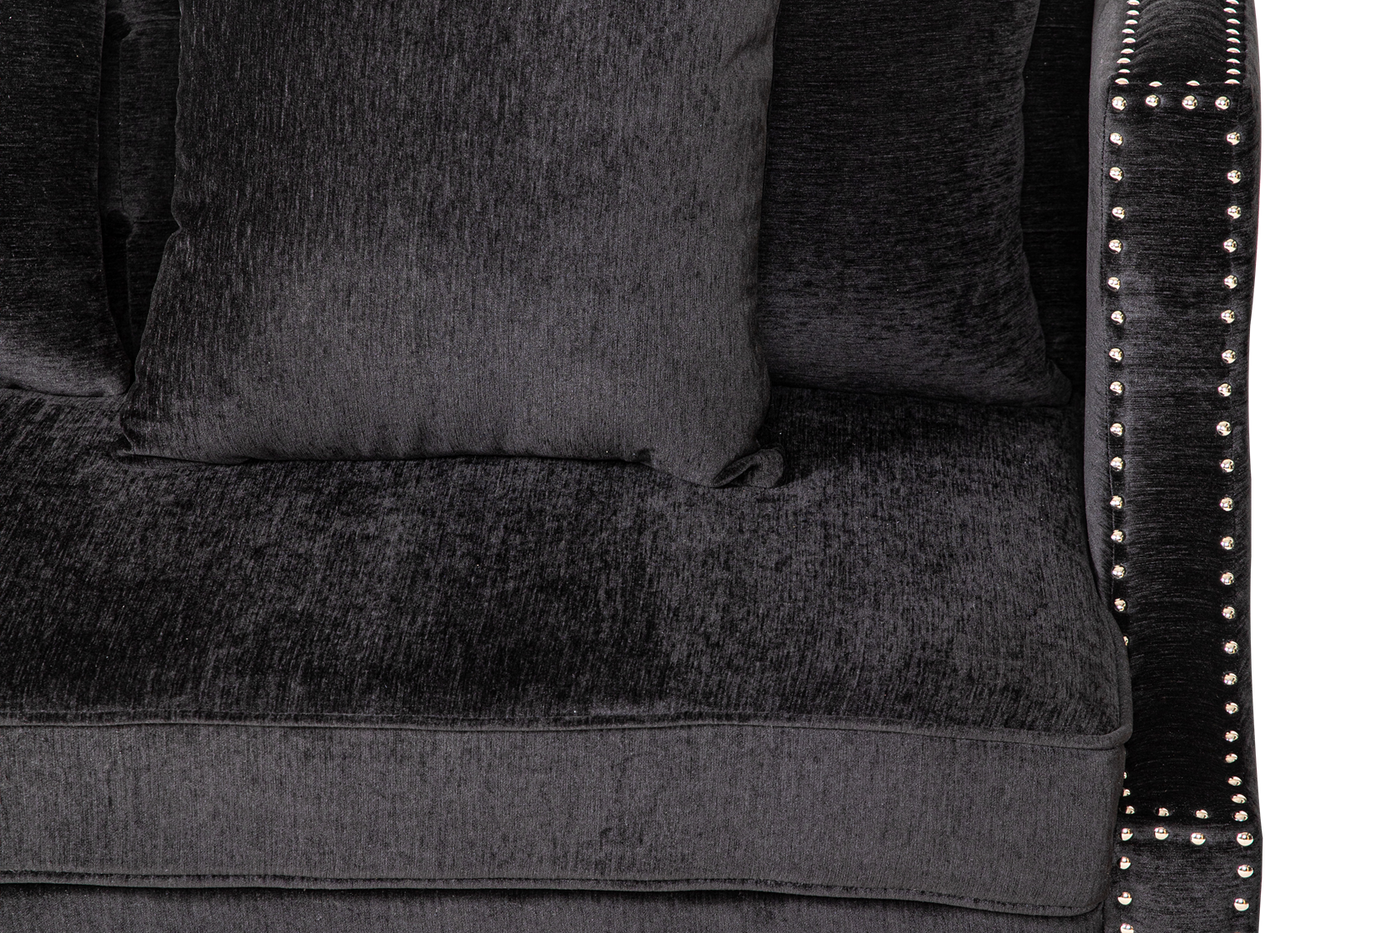 St Regis Sofa Black - Future Classics Furniture